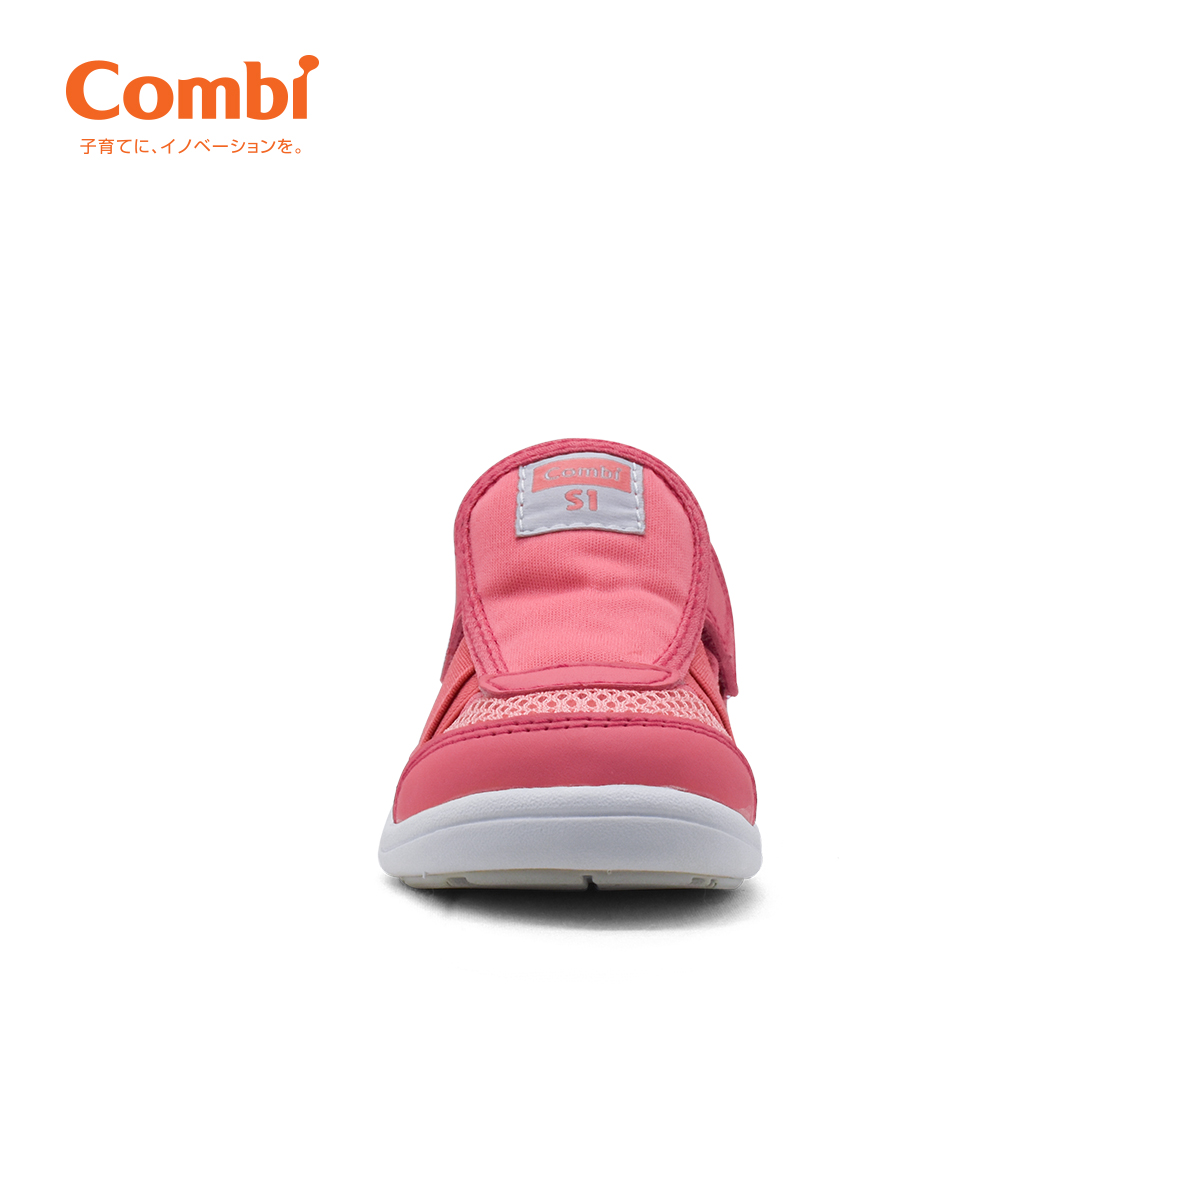 Giầy Combi đế định hình Stability/Mobility C01 màu hồng